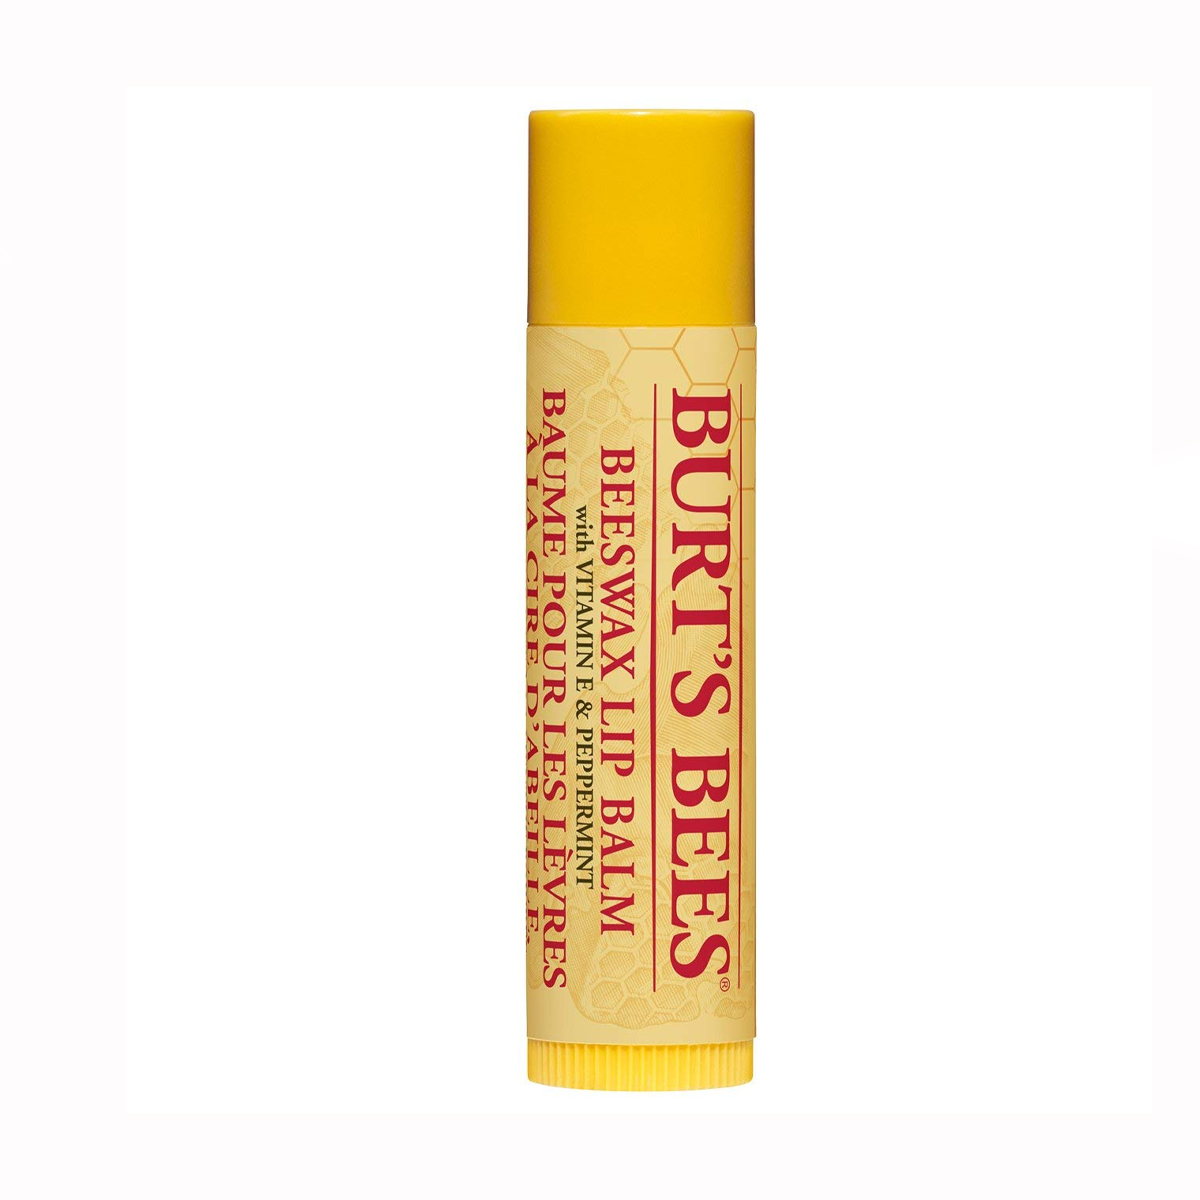 بالم لب حجم دهنده و آبرسان فلفل و ویتامین E~Beeswax Lip Balm With Vitamin E & Peppermint~BURT'S BEES